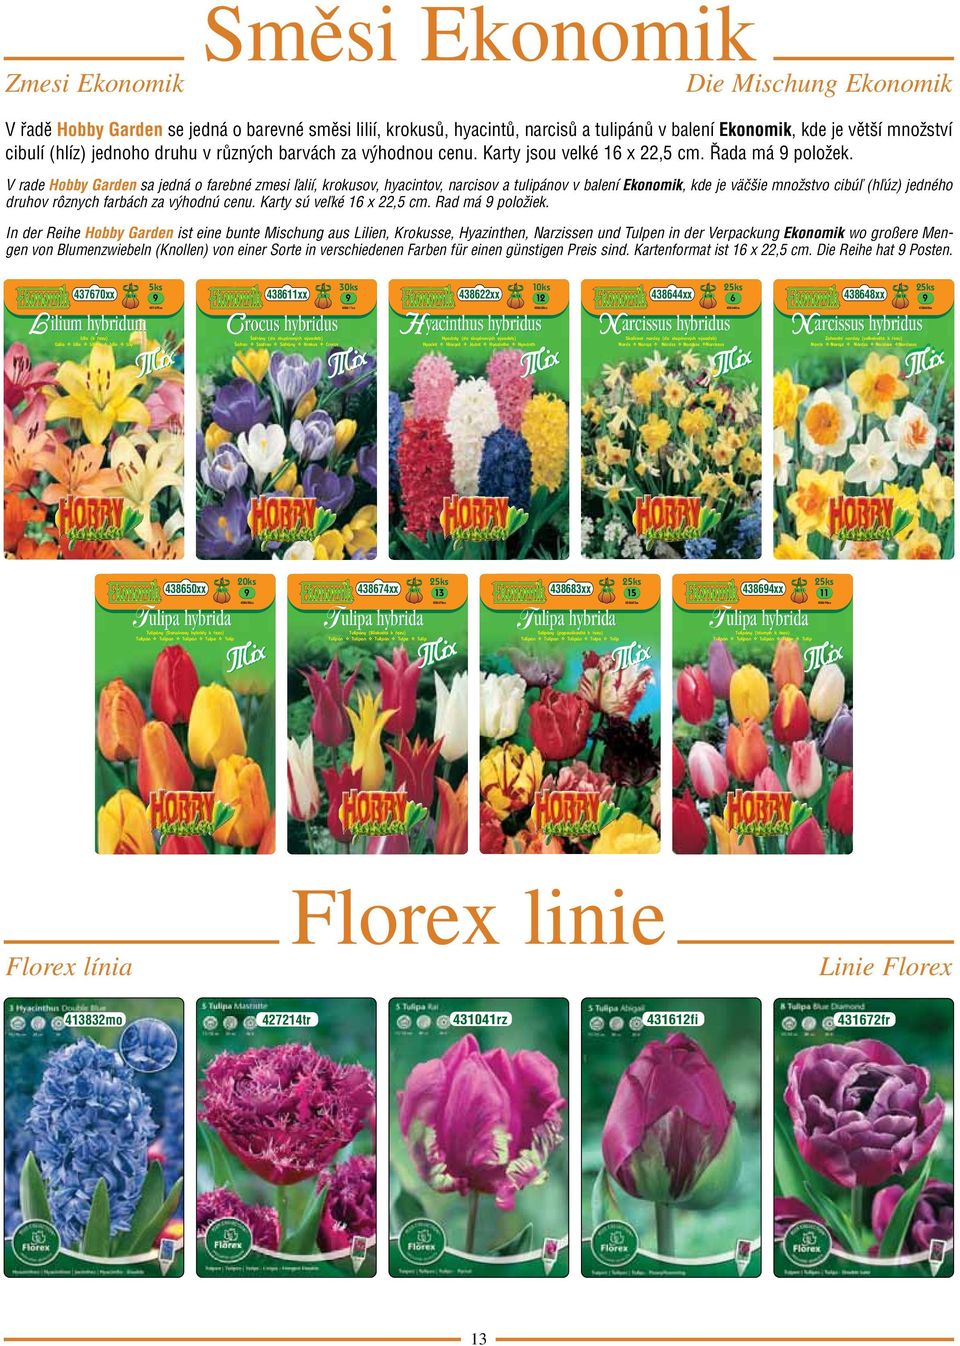 V rade Hobby Garden sa jedná o farebné zmesi ľalií, krokusov, hyacintov, narcisov a tulipánov v balení Ekonomik, kde je väčšie množstvo cibúľ (hľúz) jedného druhov rôznych farbách za výhodnú cenu.